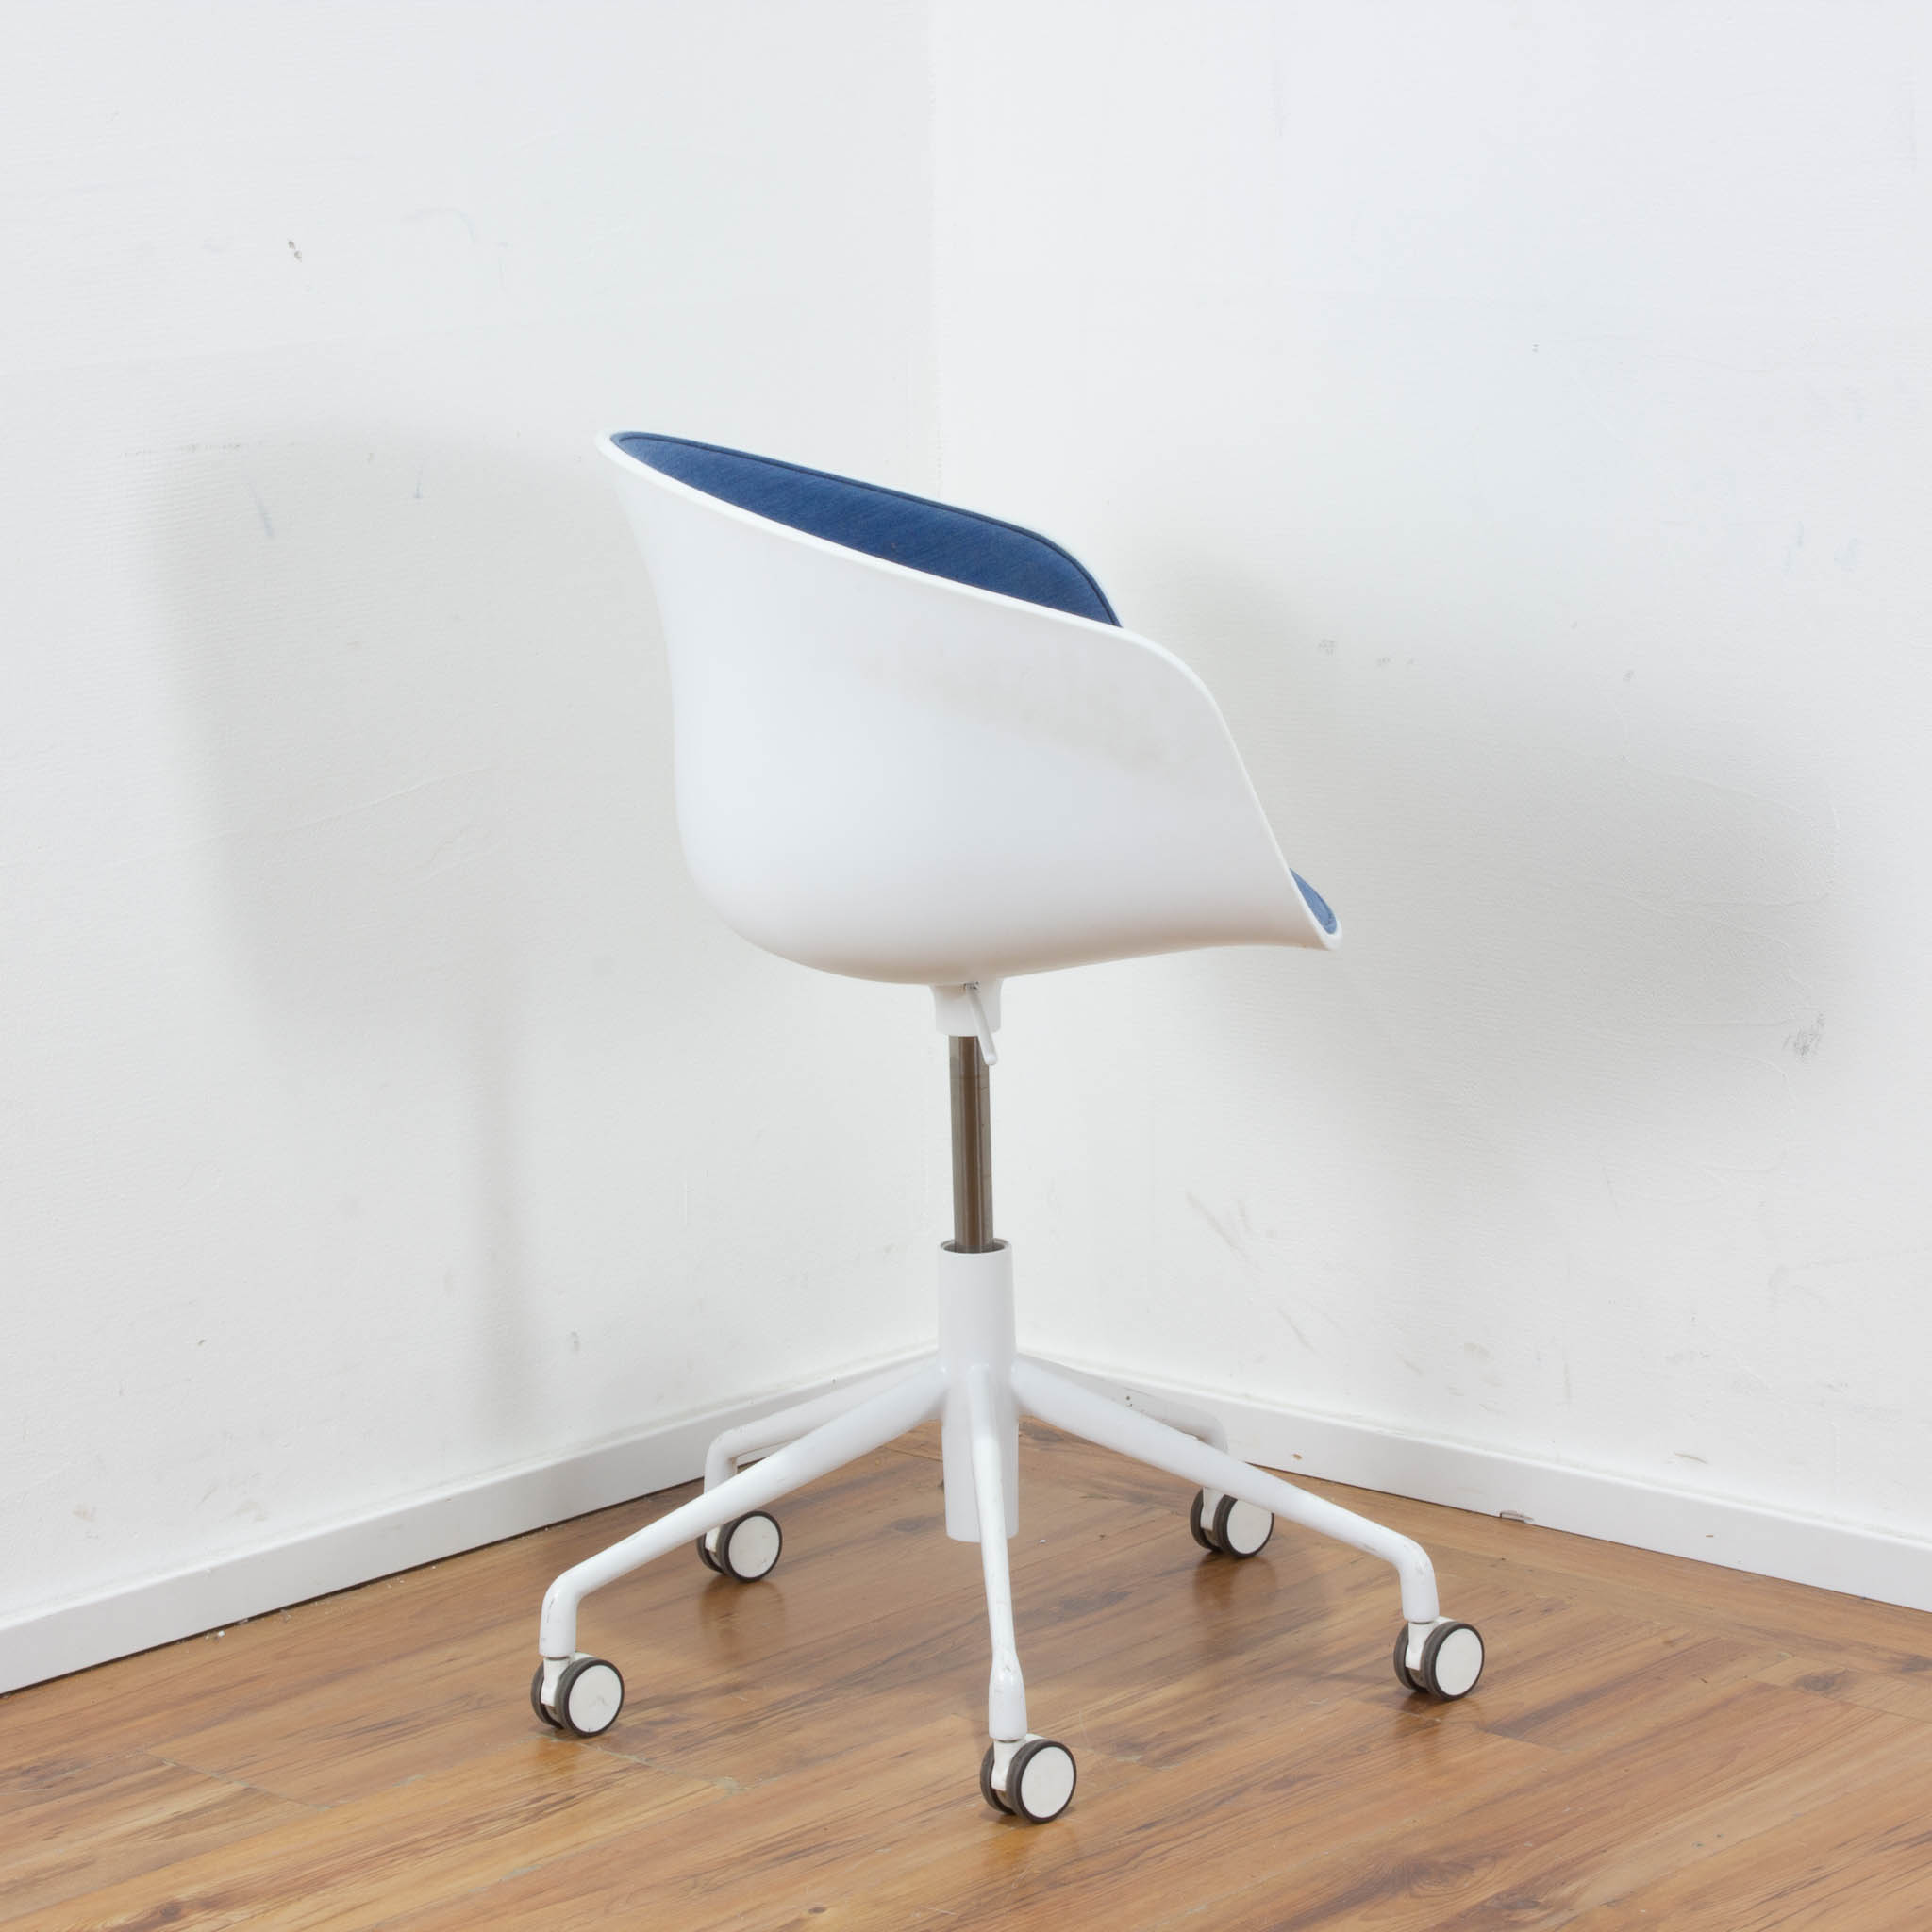 HAY "About a chair" Sessel weiß mit blauem Stoffpolster - auf Rollen